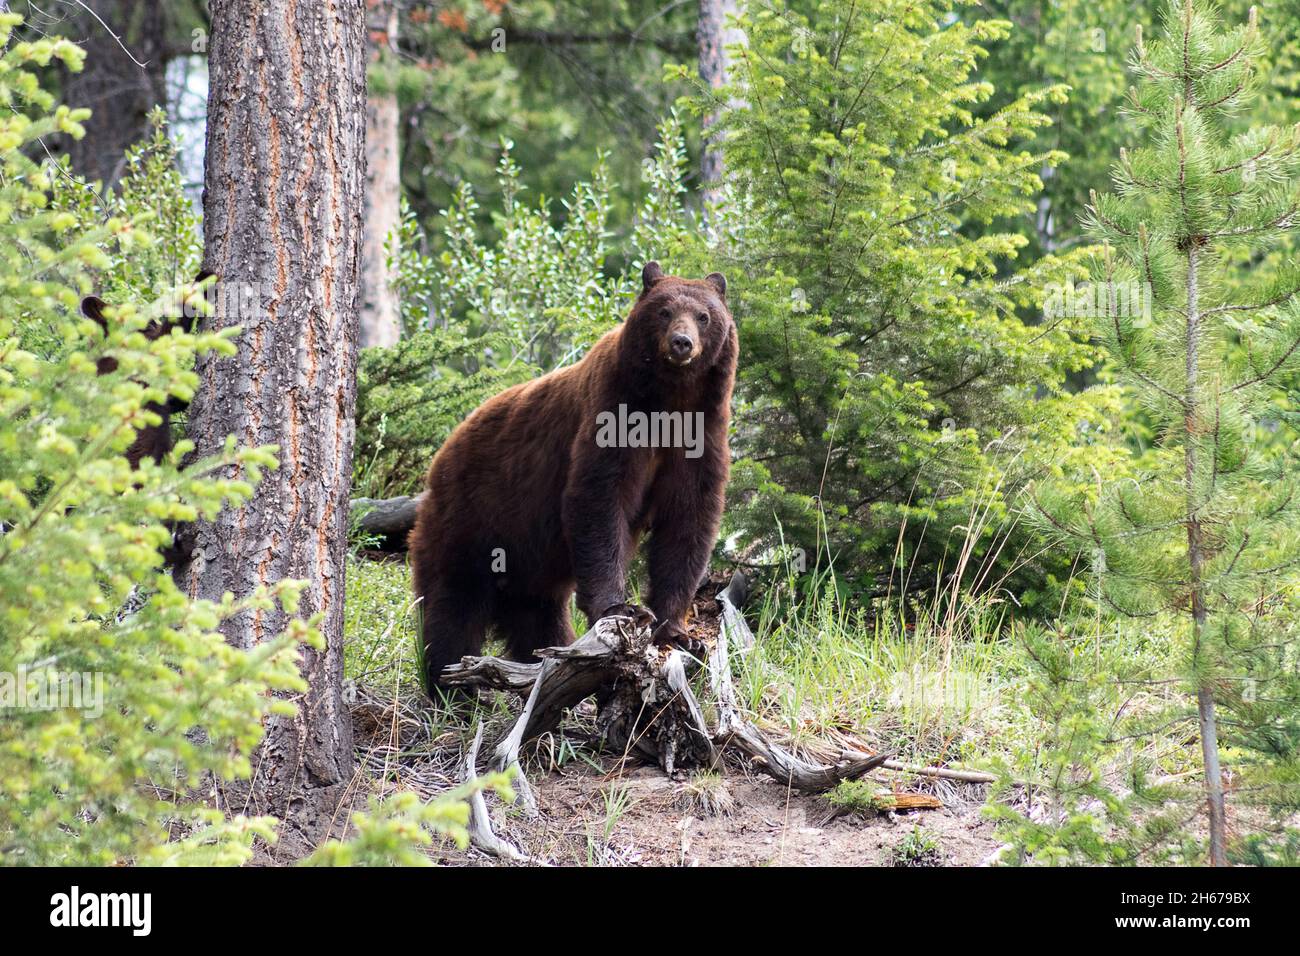 Mamma cannella nero orso guardare fotocamera mentre cucciolo sale albero accanto a lei. Circondato da alberi, erba verde Foto Stock